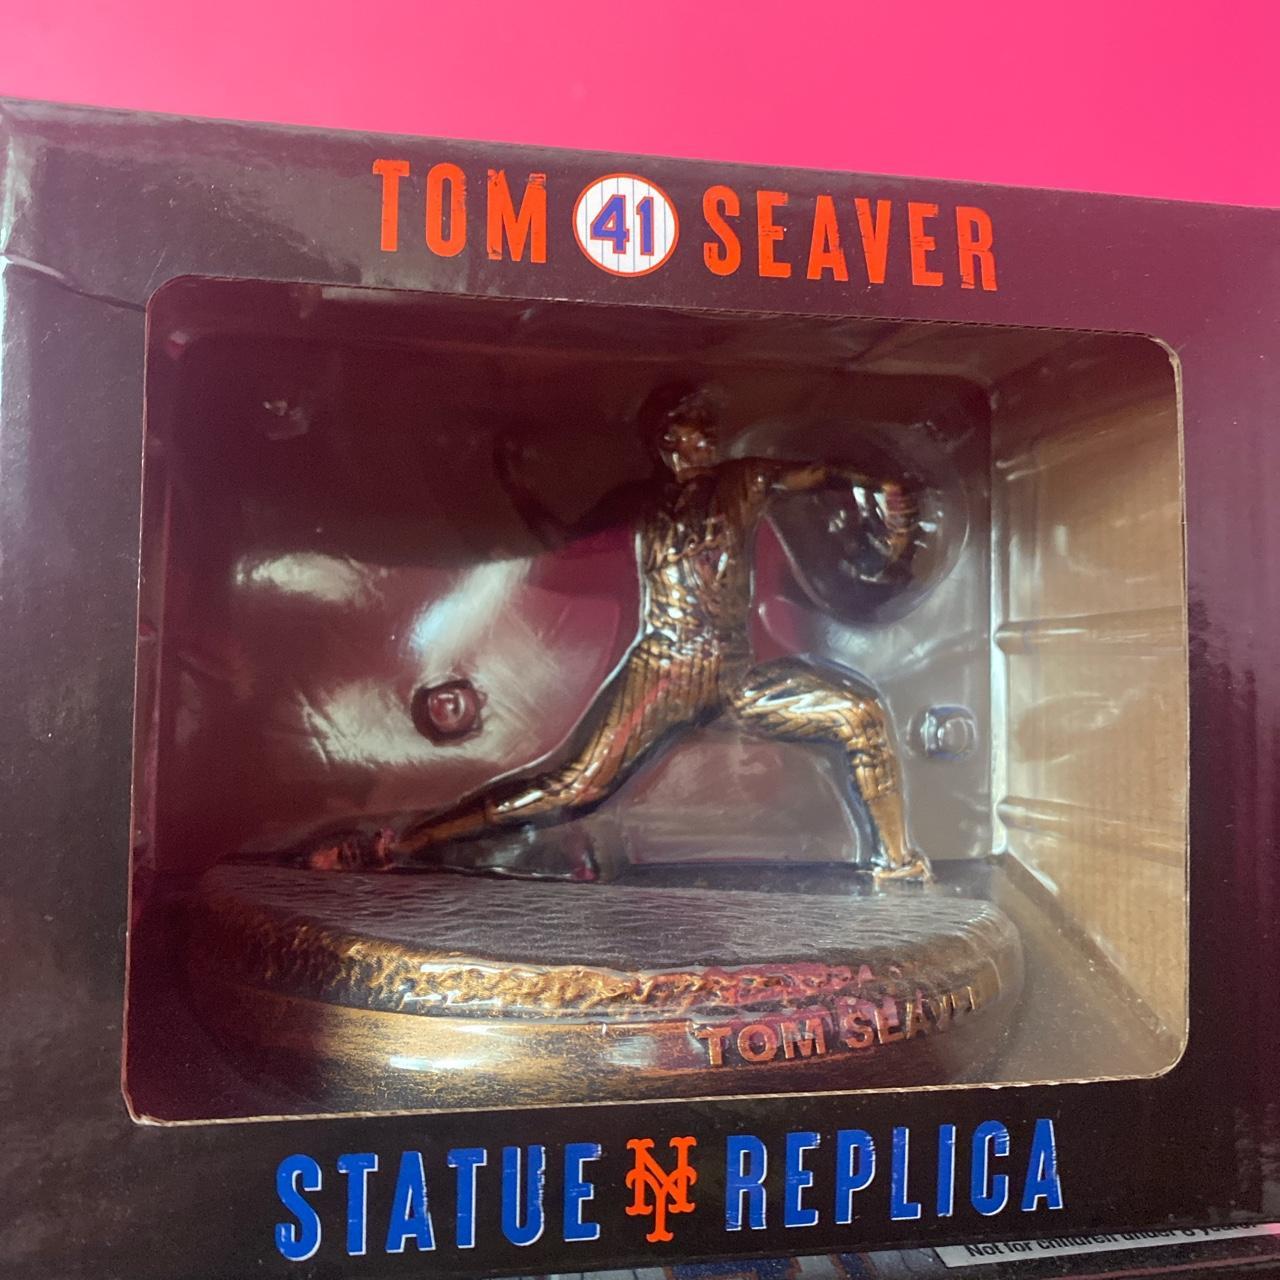 Unboxed Tom Seaver number 41 New York Mets replica. - Depop